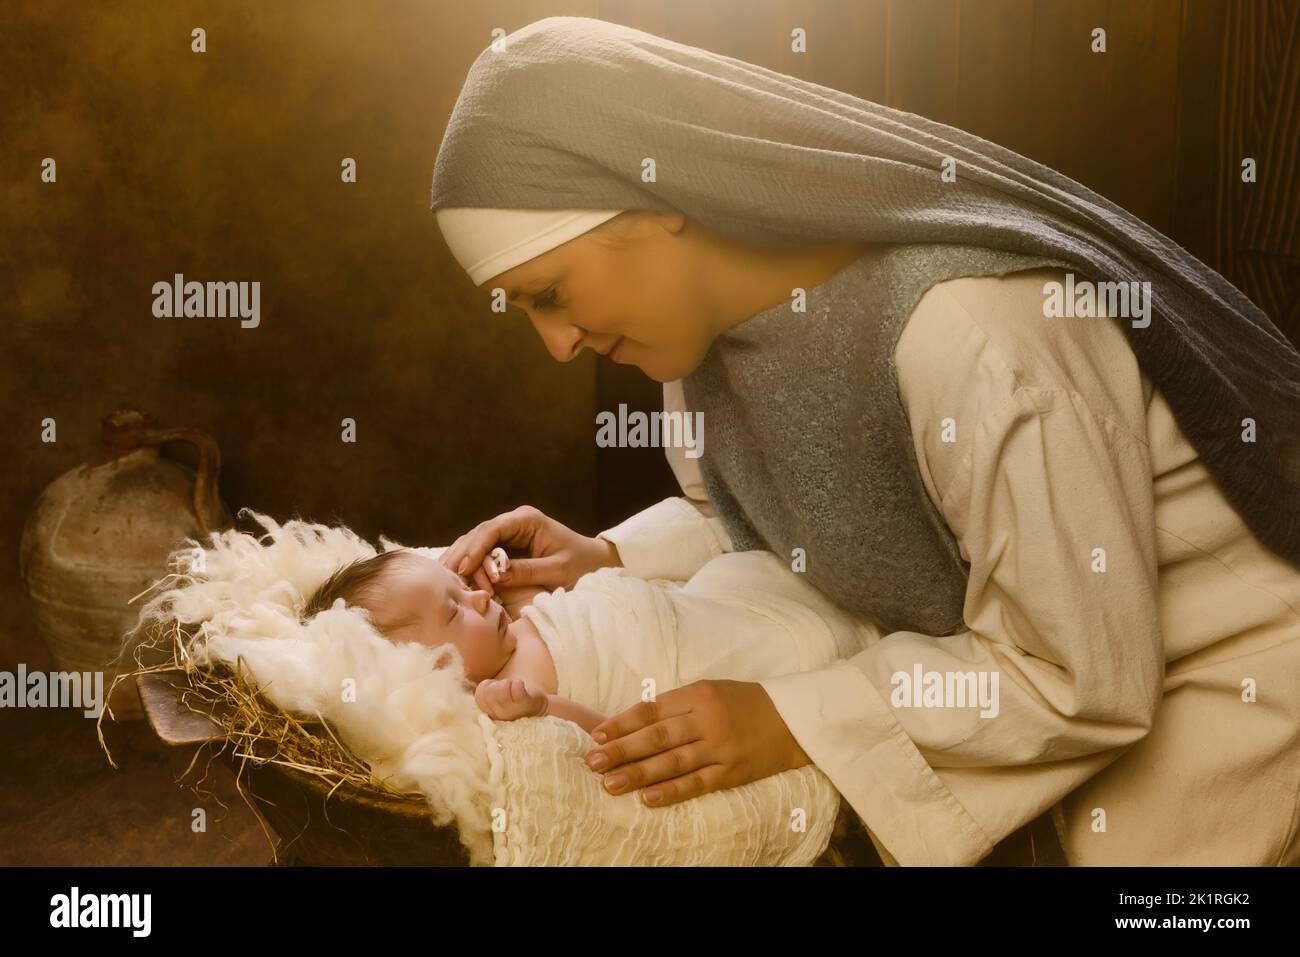 Recreación en vivo escena del belén de Navidad de la verdadera madre de un niño de 8 días de edad jugando a la Virgen María y el bebé Jesús Foto de stock